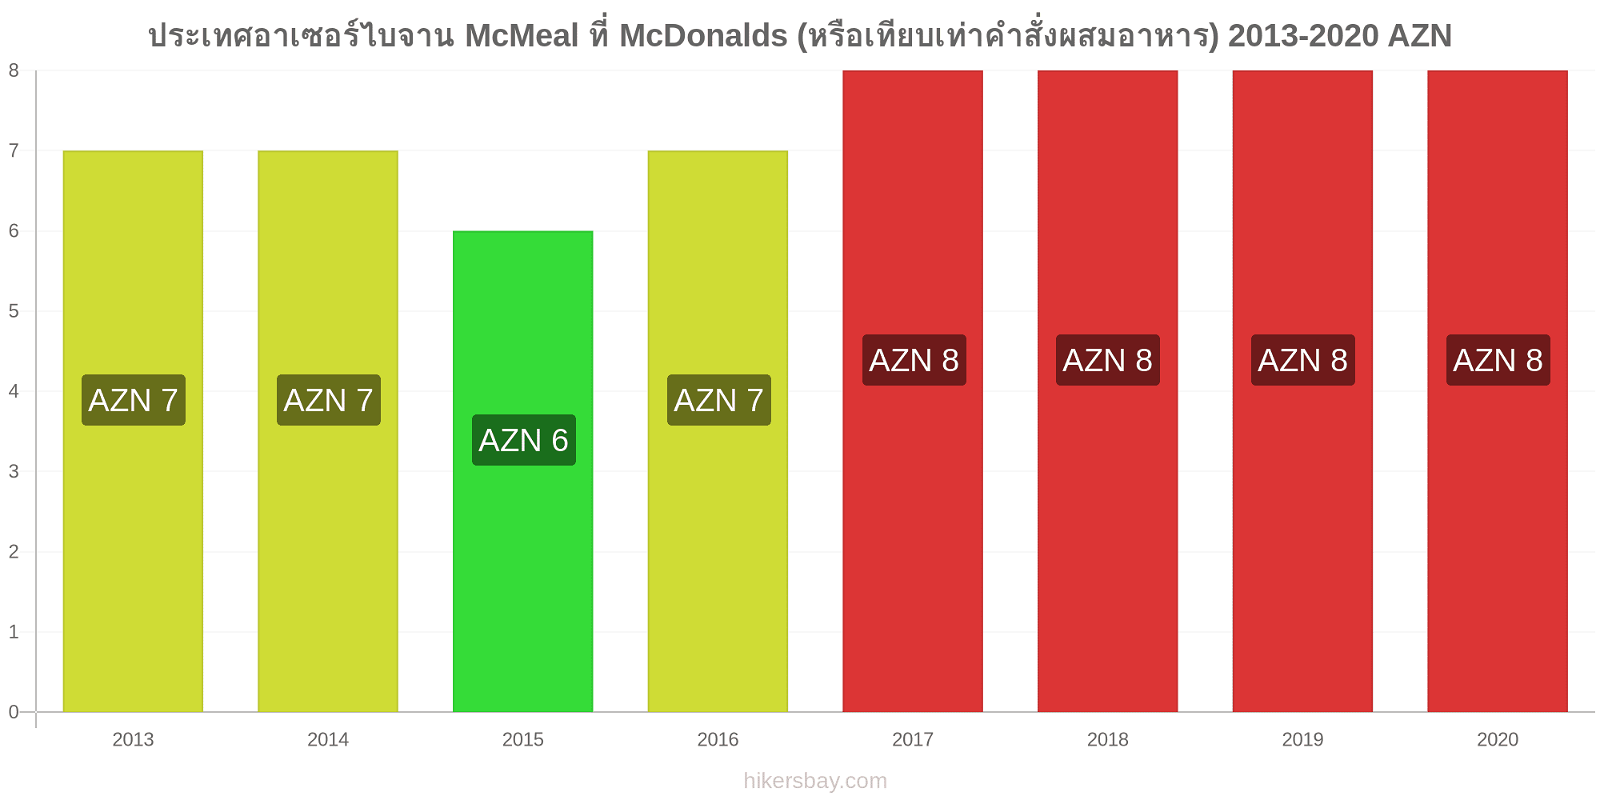 ประเทศอาเซอร์ไบจาน การเปลี่ยนแปลงราคา McMeal ที่ McDonalds (หรือเทียบเท่าคำสั่งผสมอาหาร) hikersbay.com